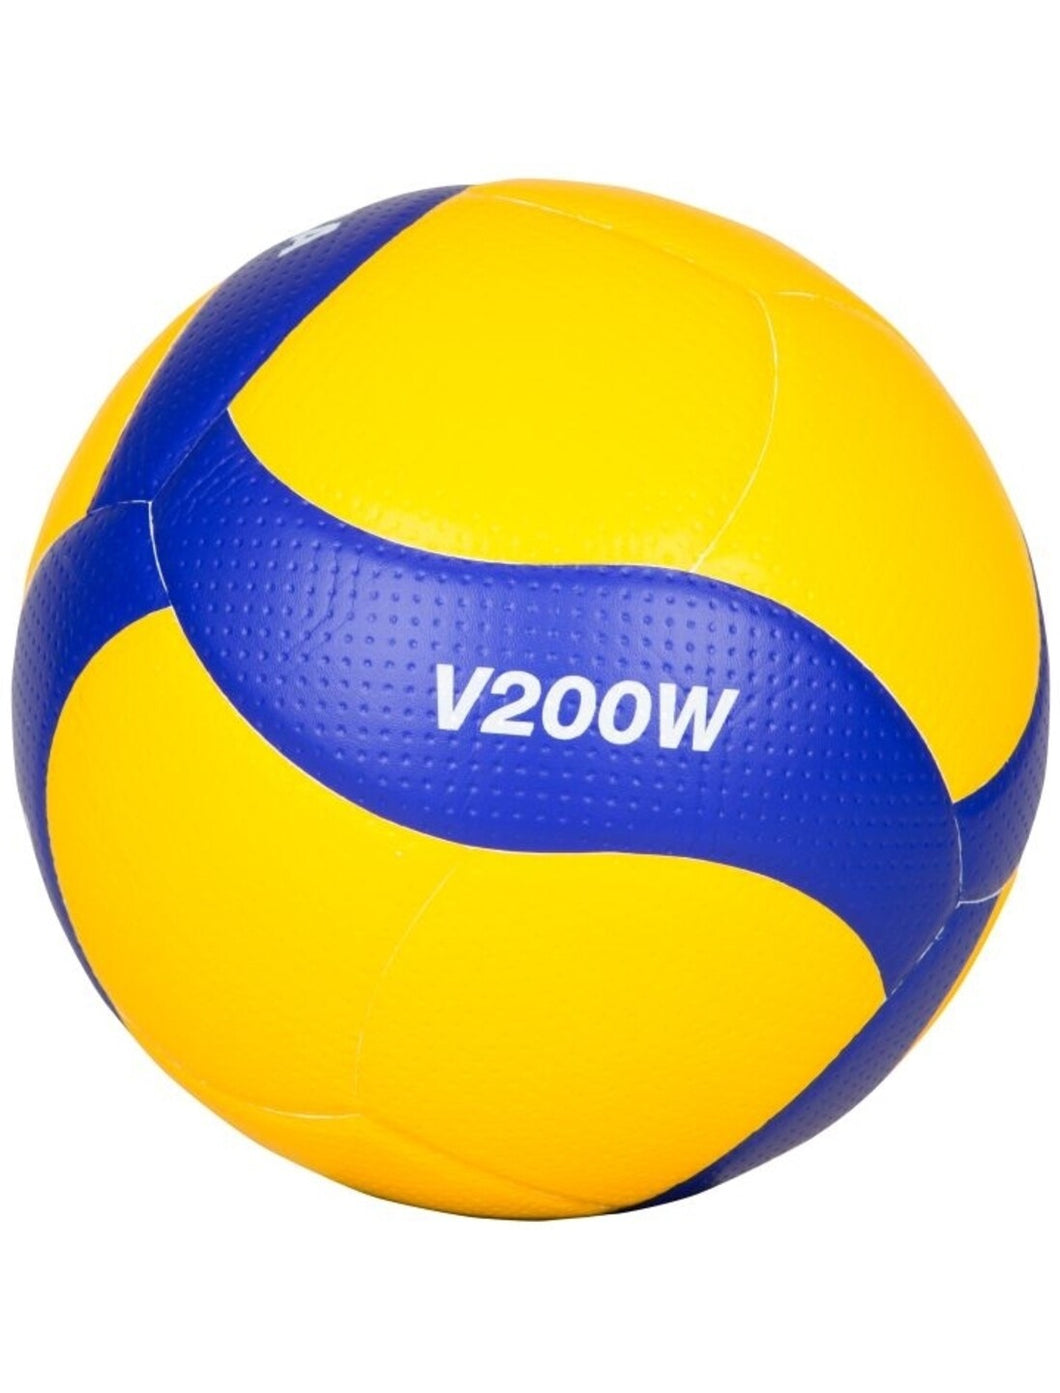 5xMikasa Volleyball V200W-DVV--TOPMODELL jetzt zum Sonderpreis